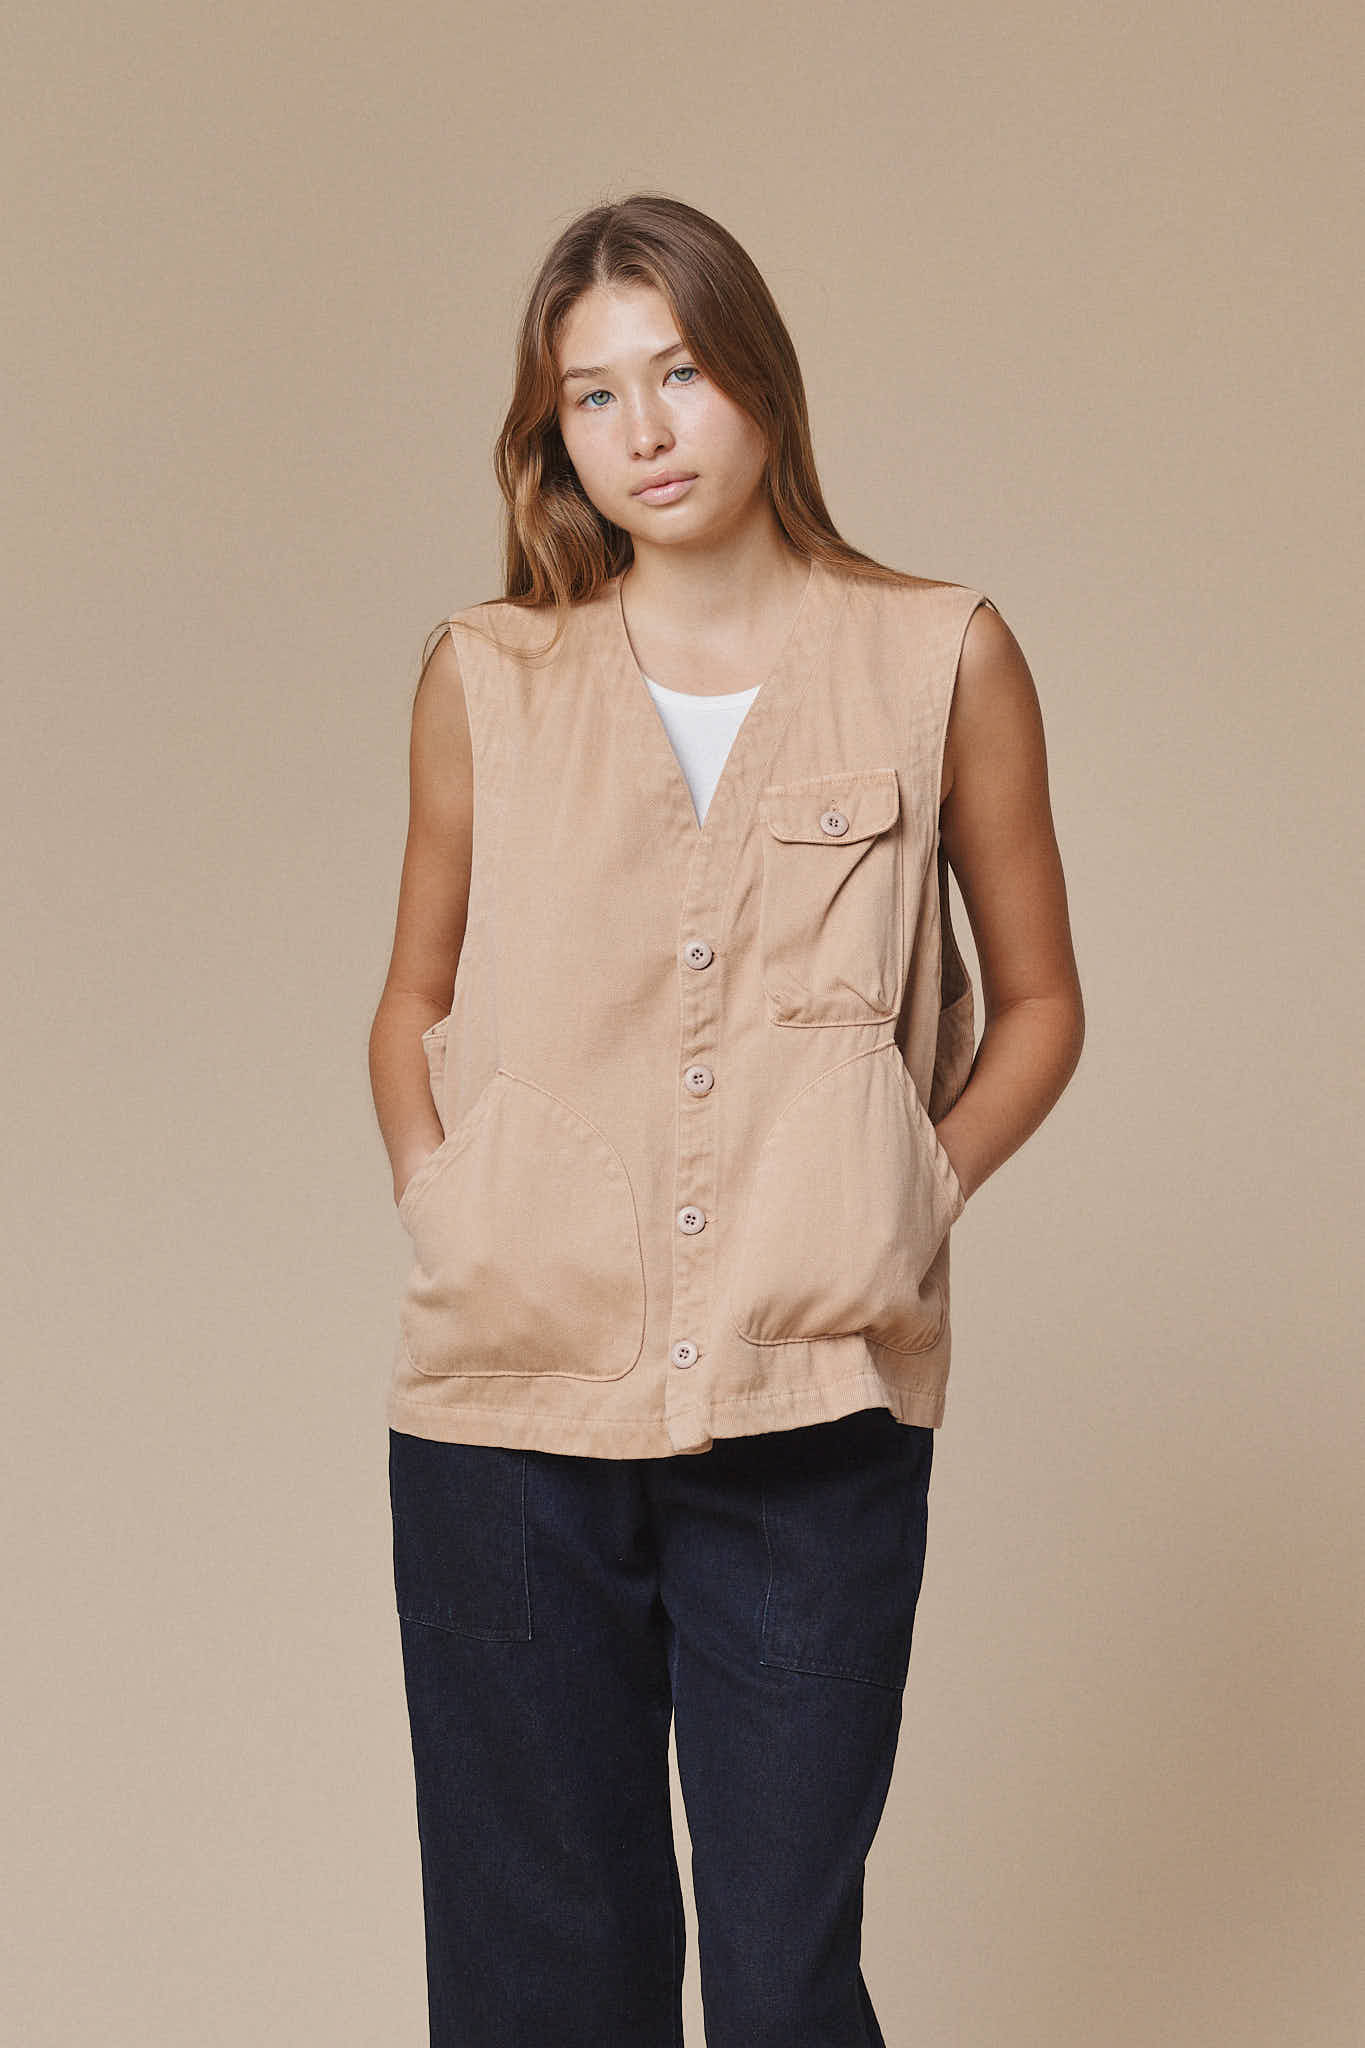 Falcon Vest | Jungmaven Hemp Clothing & Accessories / model_desc: Katriel is 5’9” wearing M